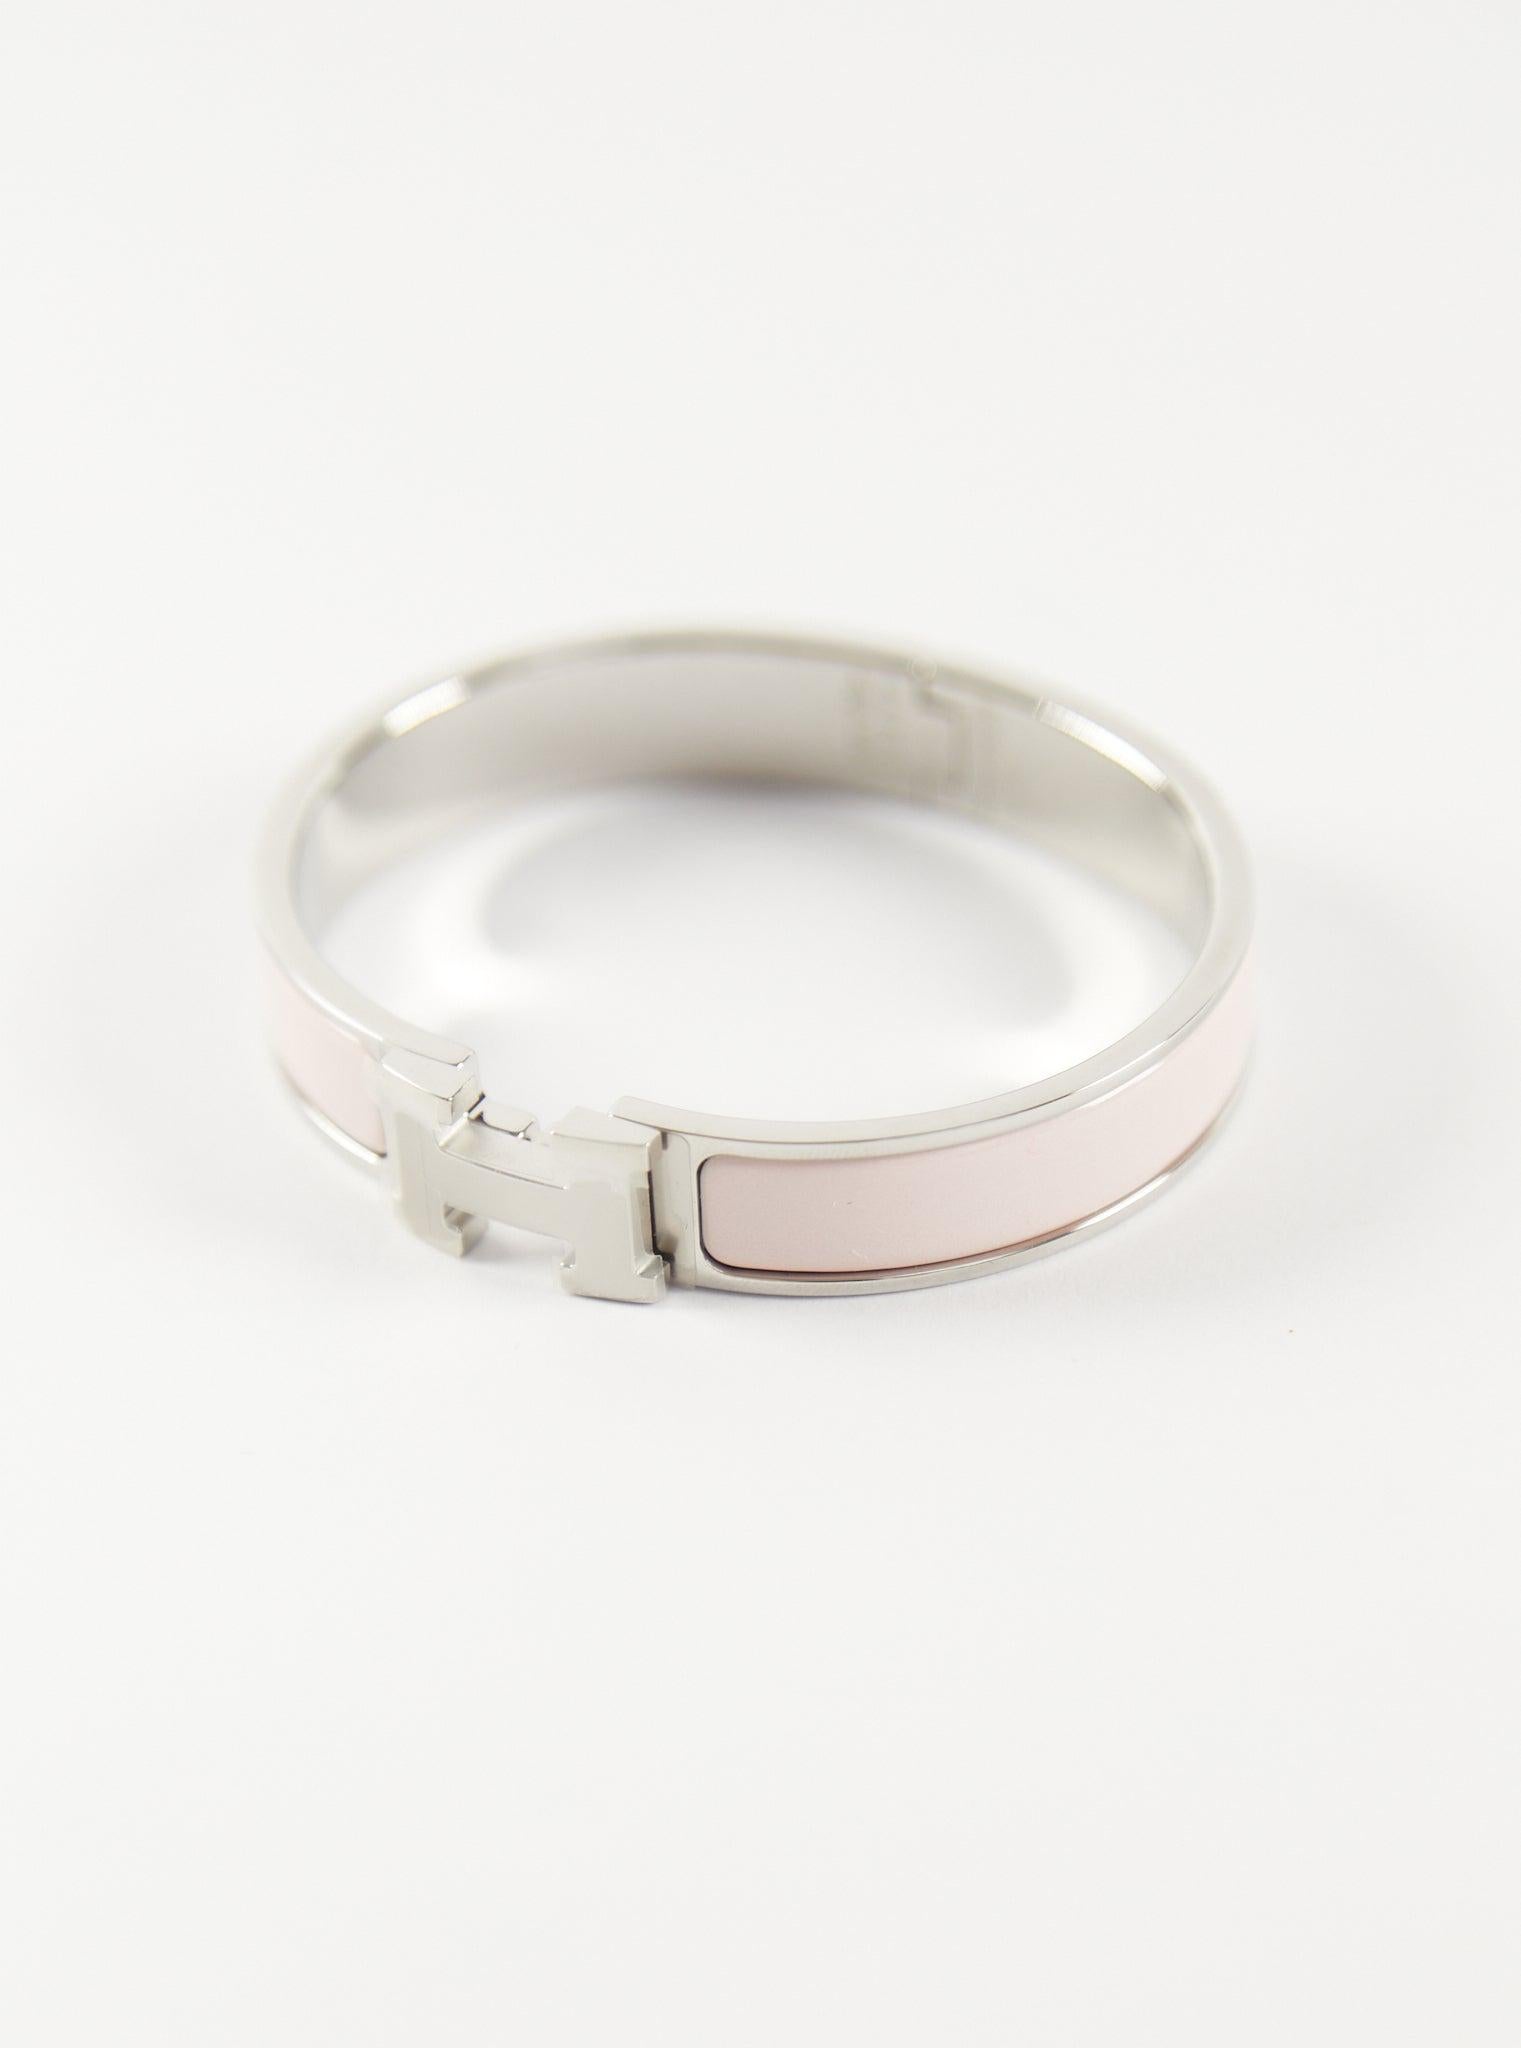 Hermès  Clic H GM Armband in Rose Candeur & Palladium

Größe des Handgelenks: 16.8 cm  Breite: 8 mm

Hergestellt in Frankreich